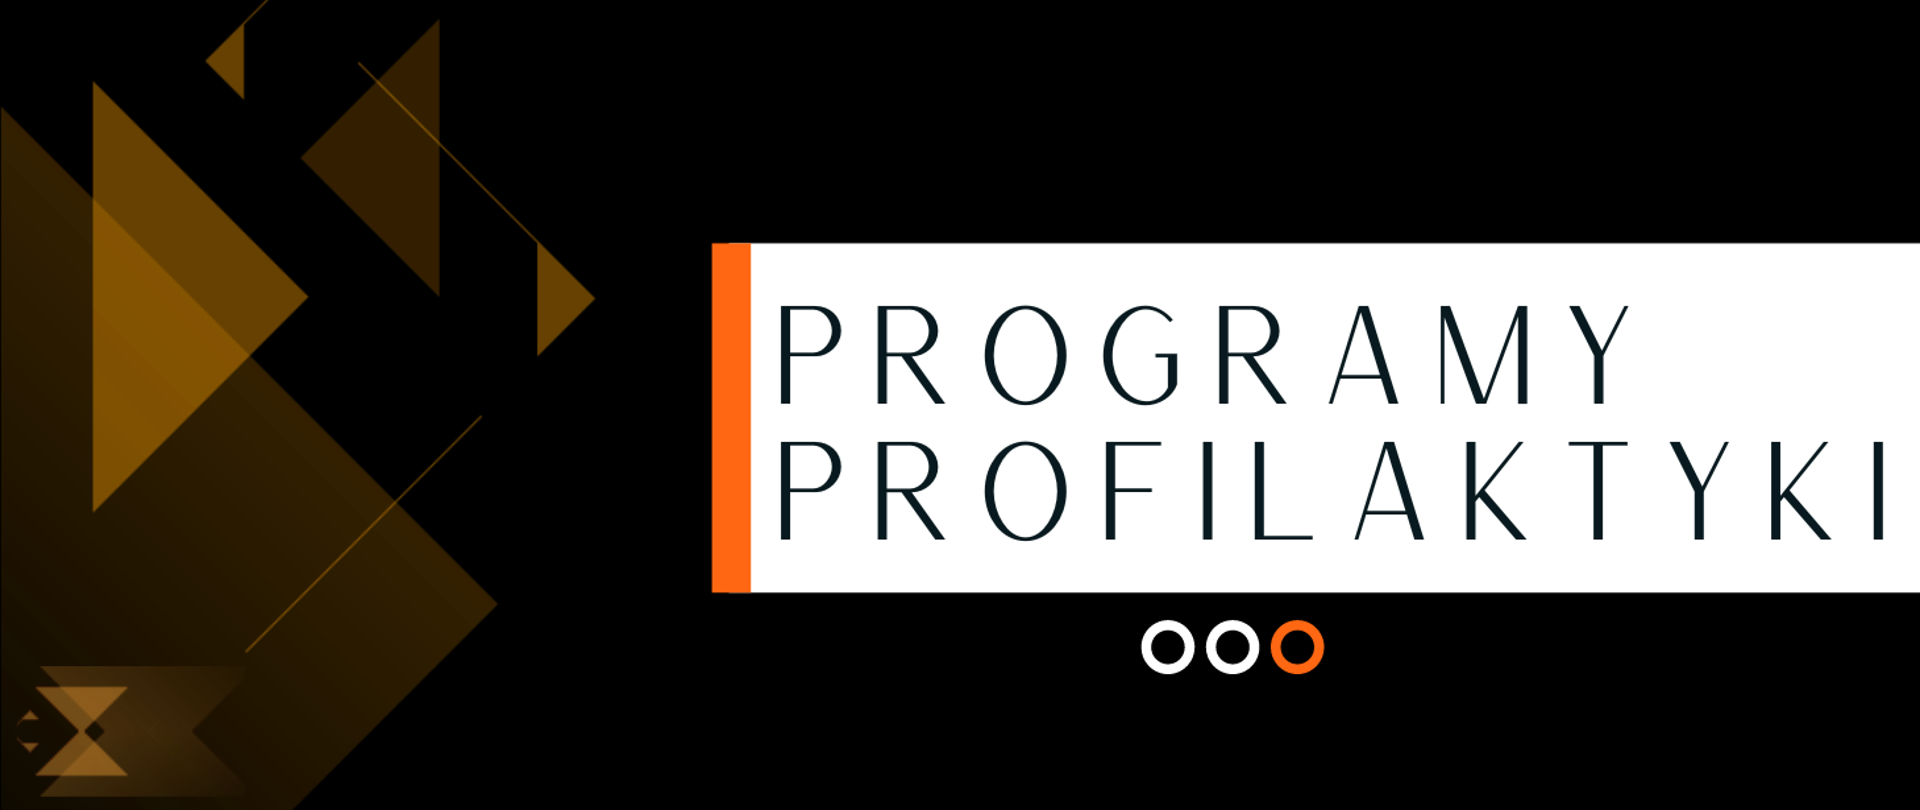 grafika, czarne tło, po lewej stronie kształty geometryczne: trójkąty, linie w kolorze pomarańczowym, na środku na białym tle czarny napis programy profilaktyki